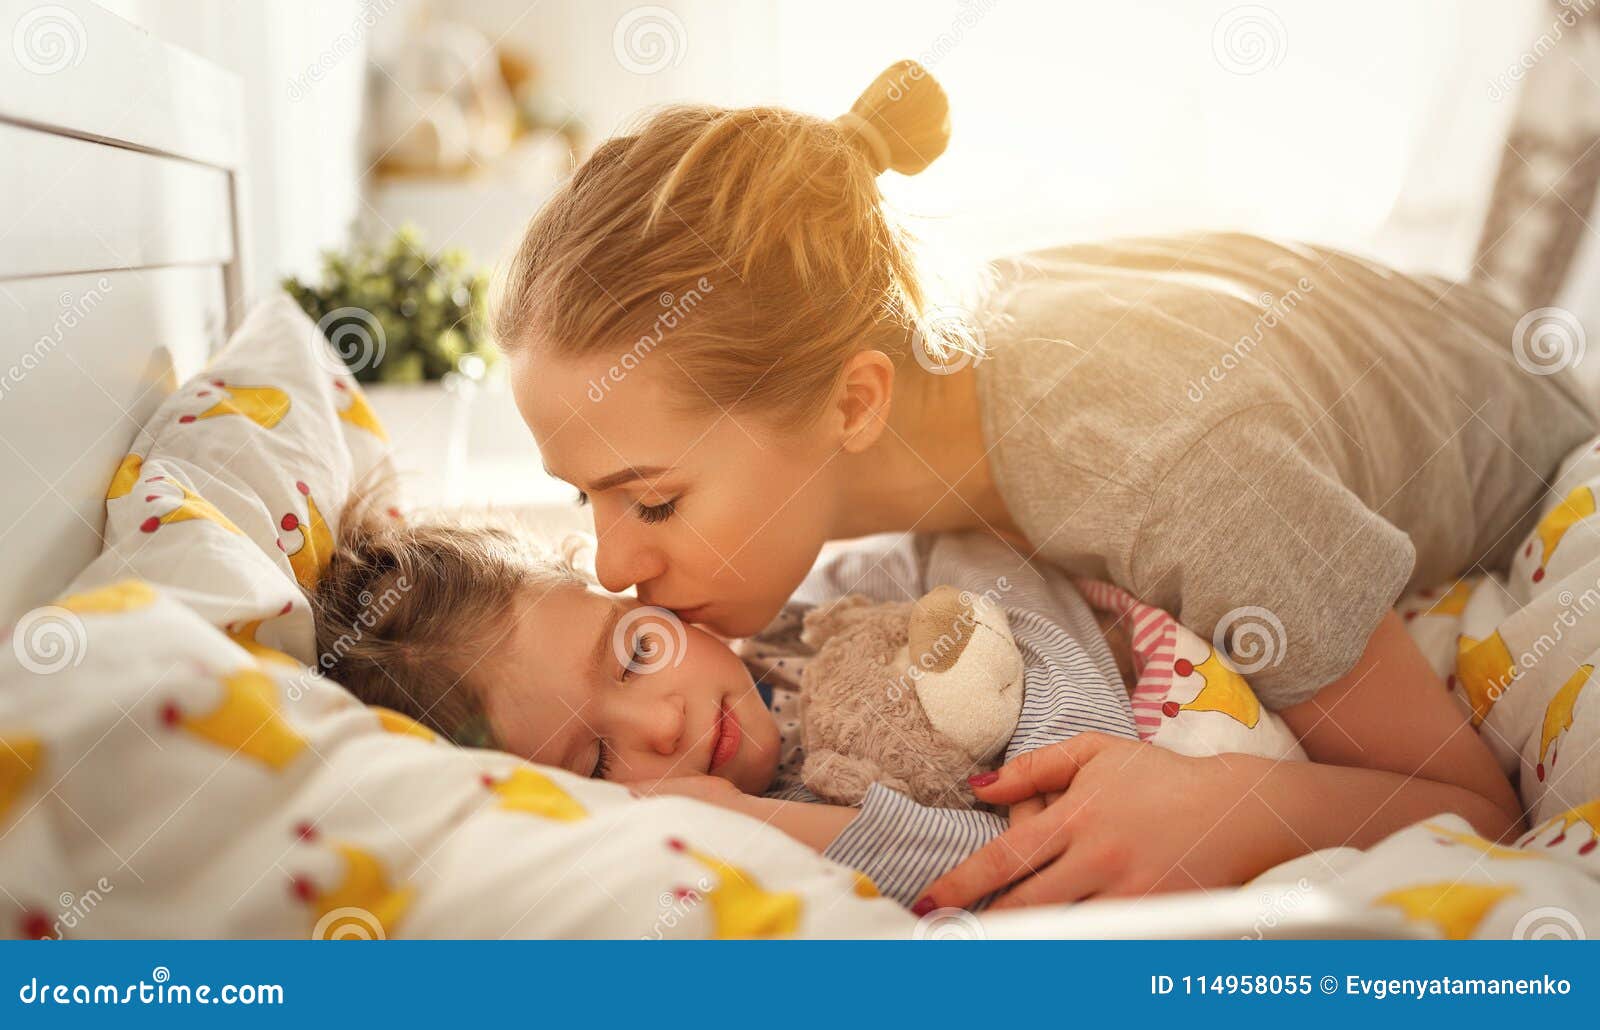 Пришел к спящей дочке. Разбудить ребенка утром. Пробуждение младенца. Мама с ребенком перед сном. Мама будит утром ребенка.